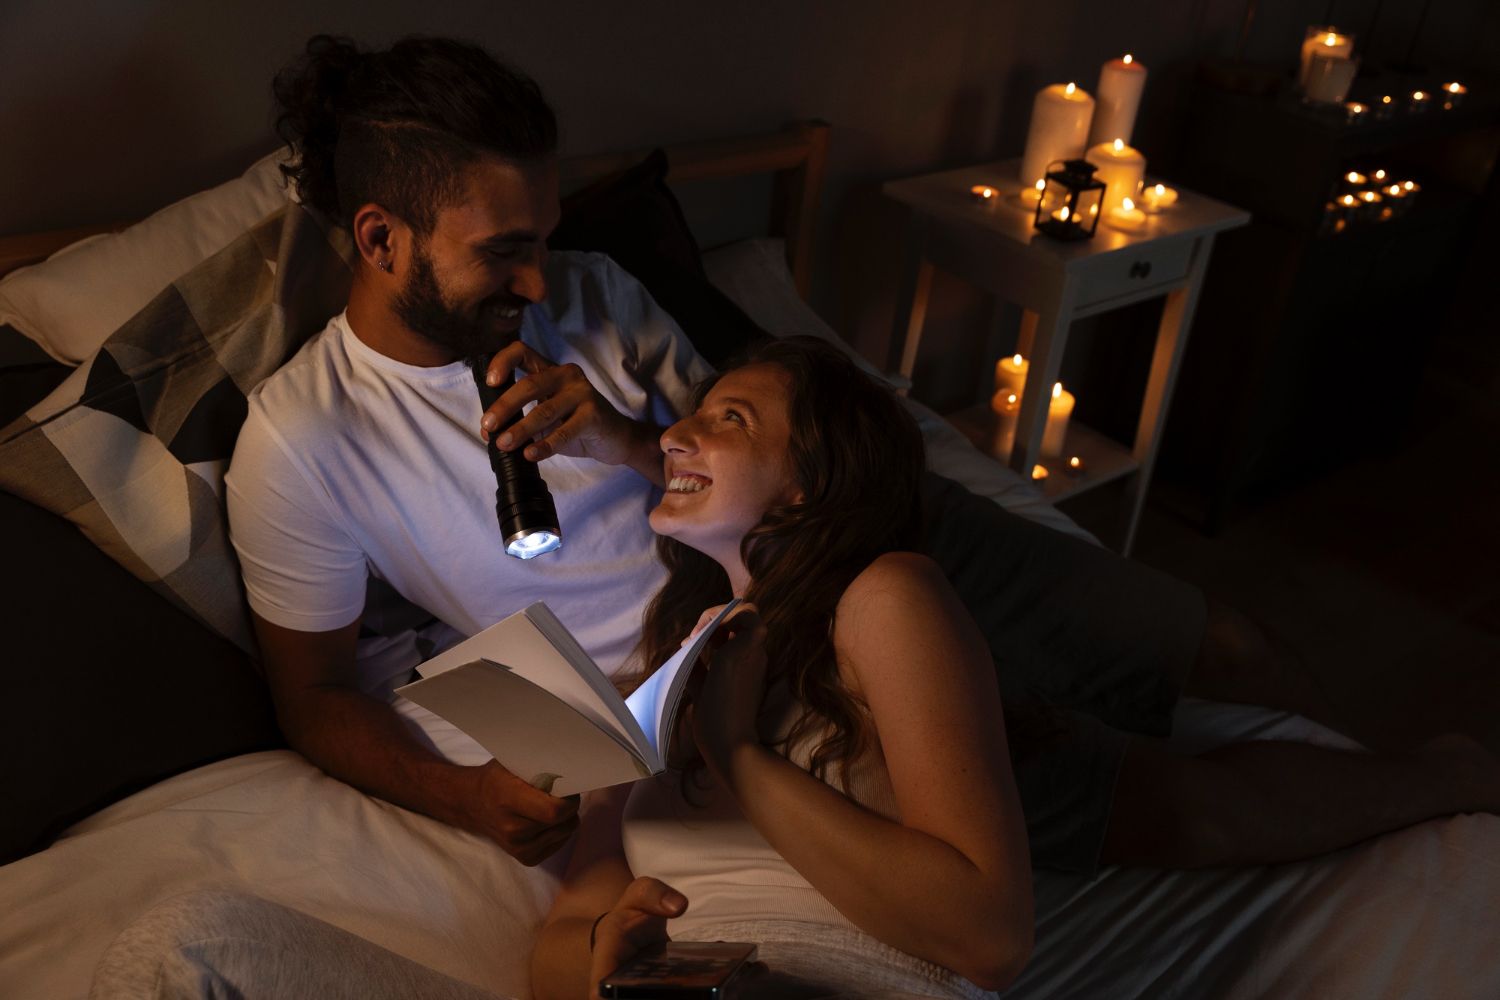 Що робити під час блекауту - секс-поради для пар, які сидять без світла